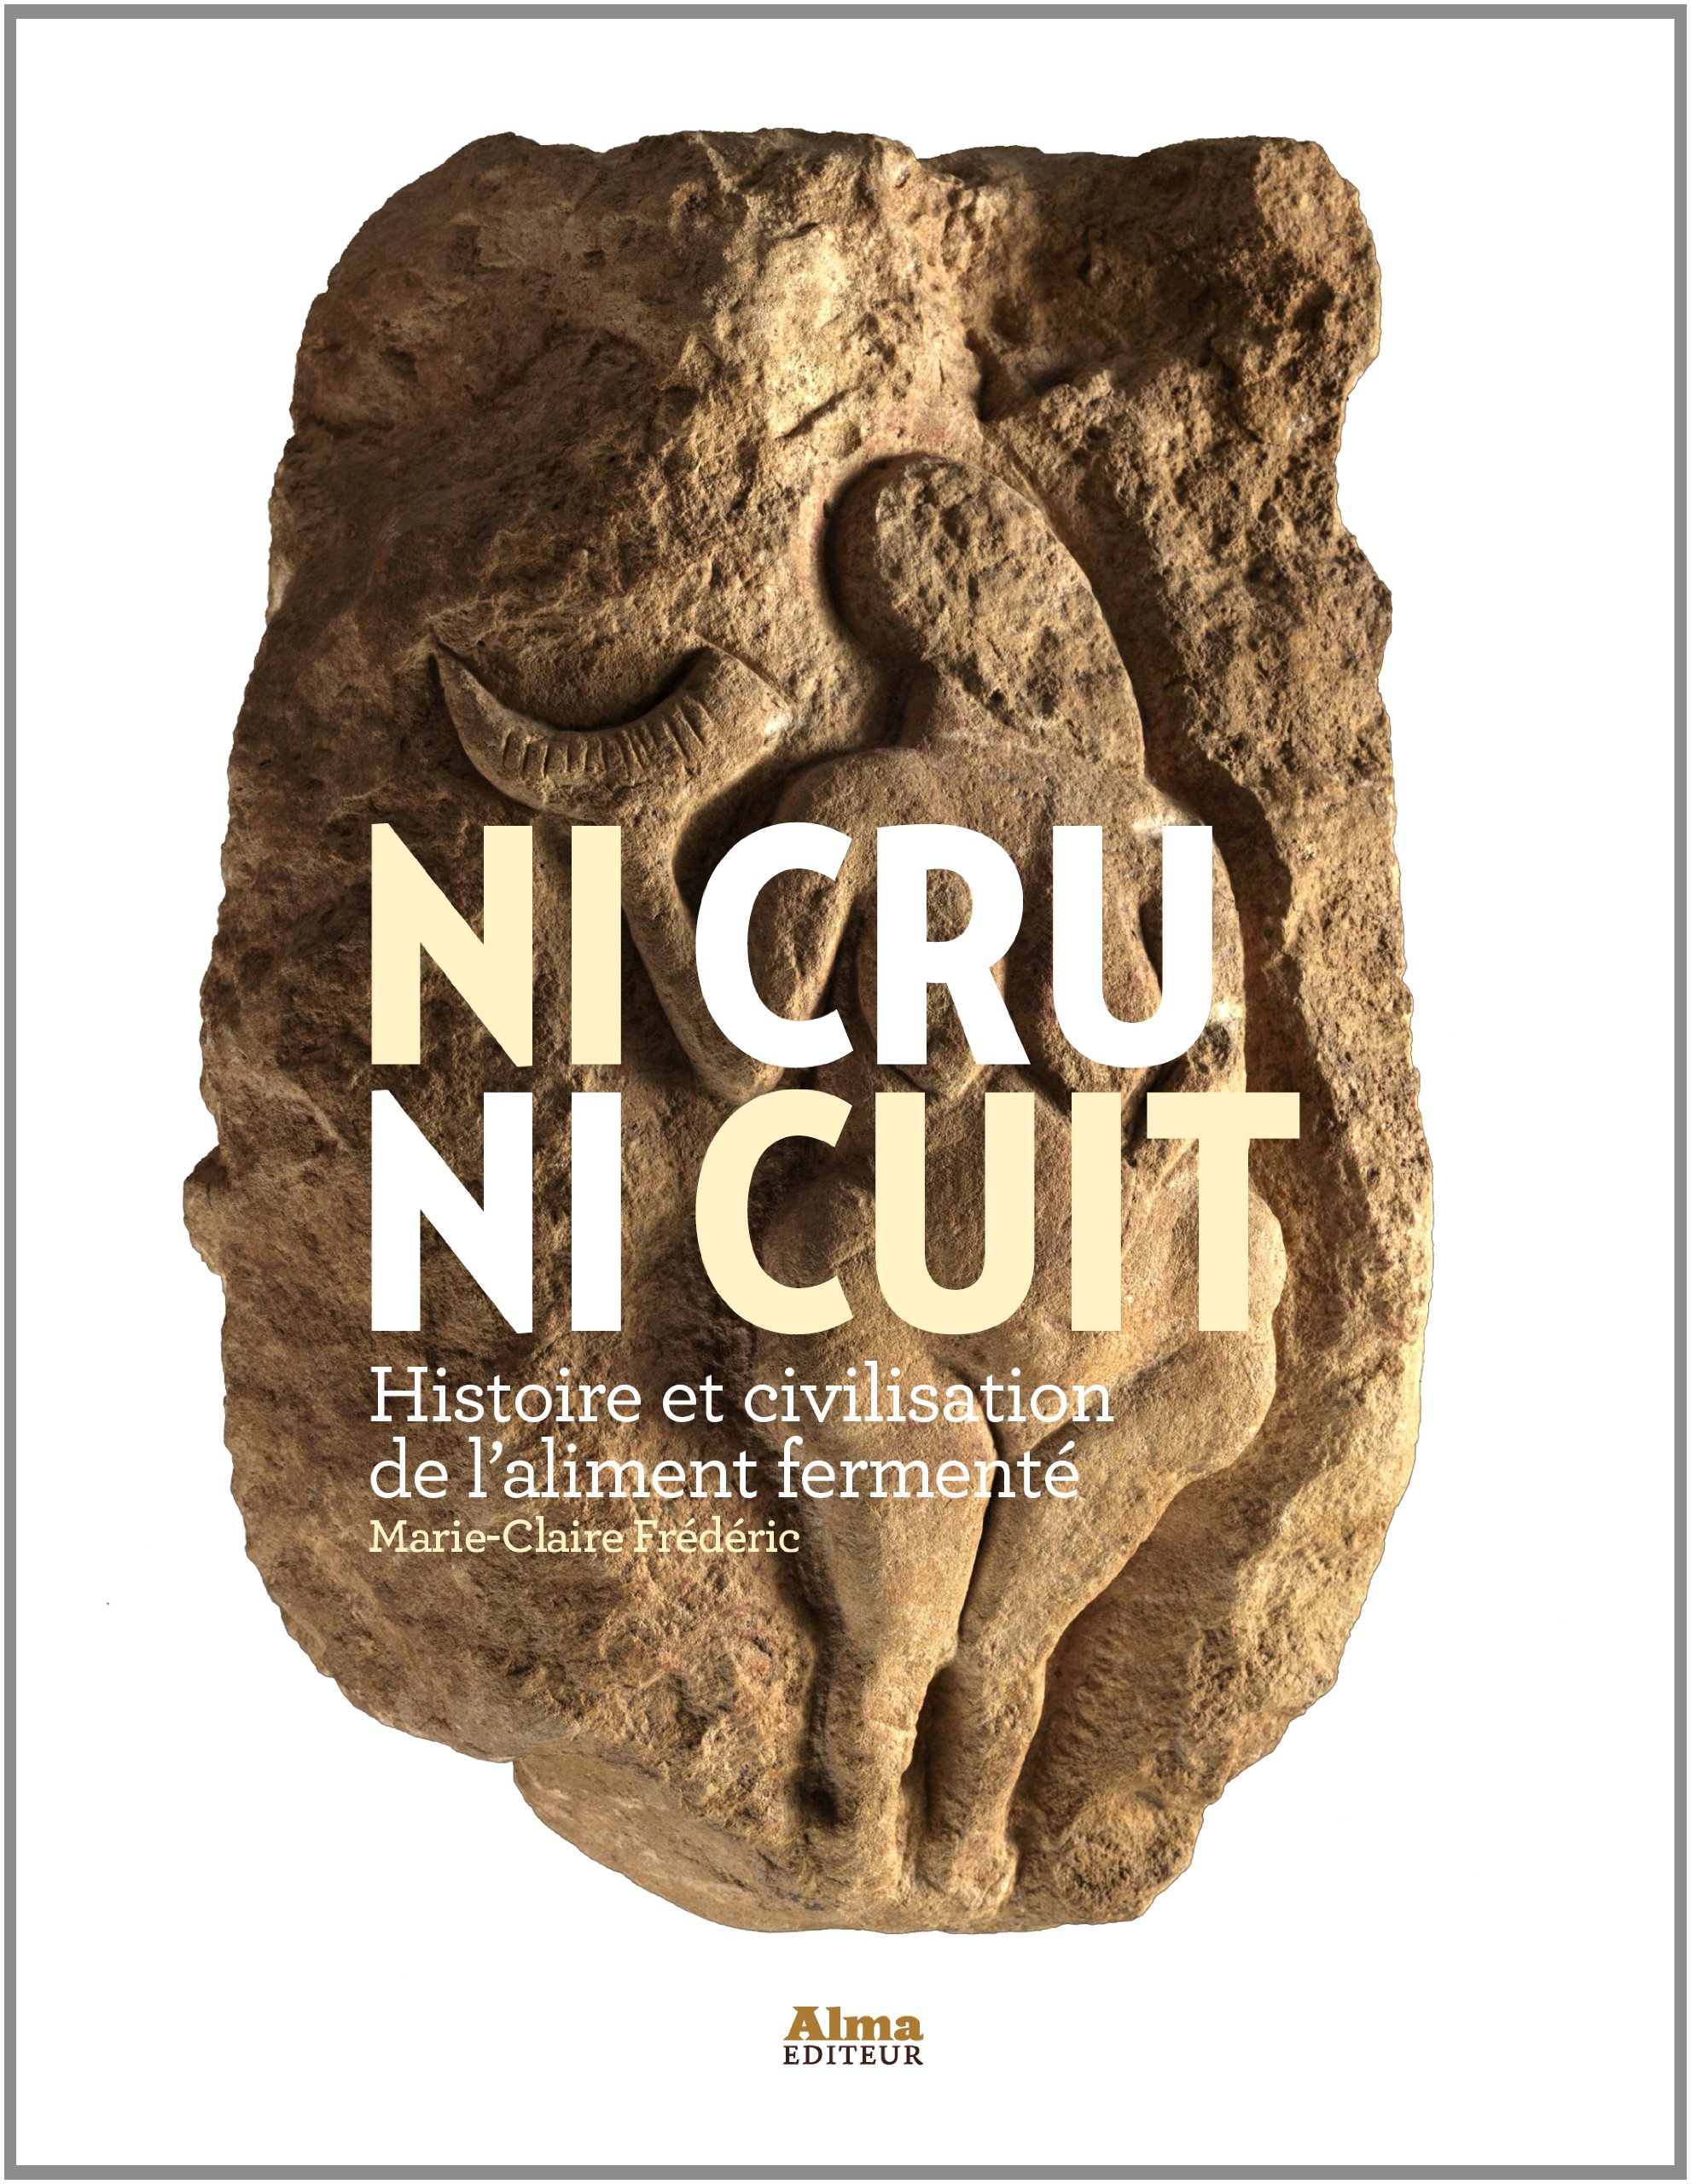 Ni cru ni cuit. Histoire et civilisation de l'aliment fermenté, 2014, 350 p.